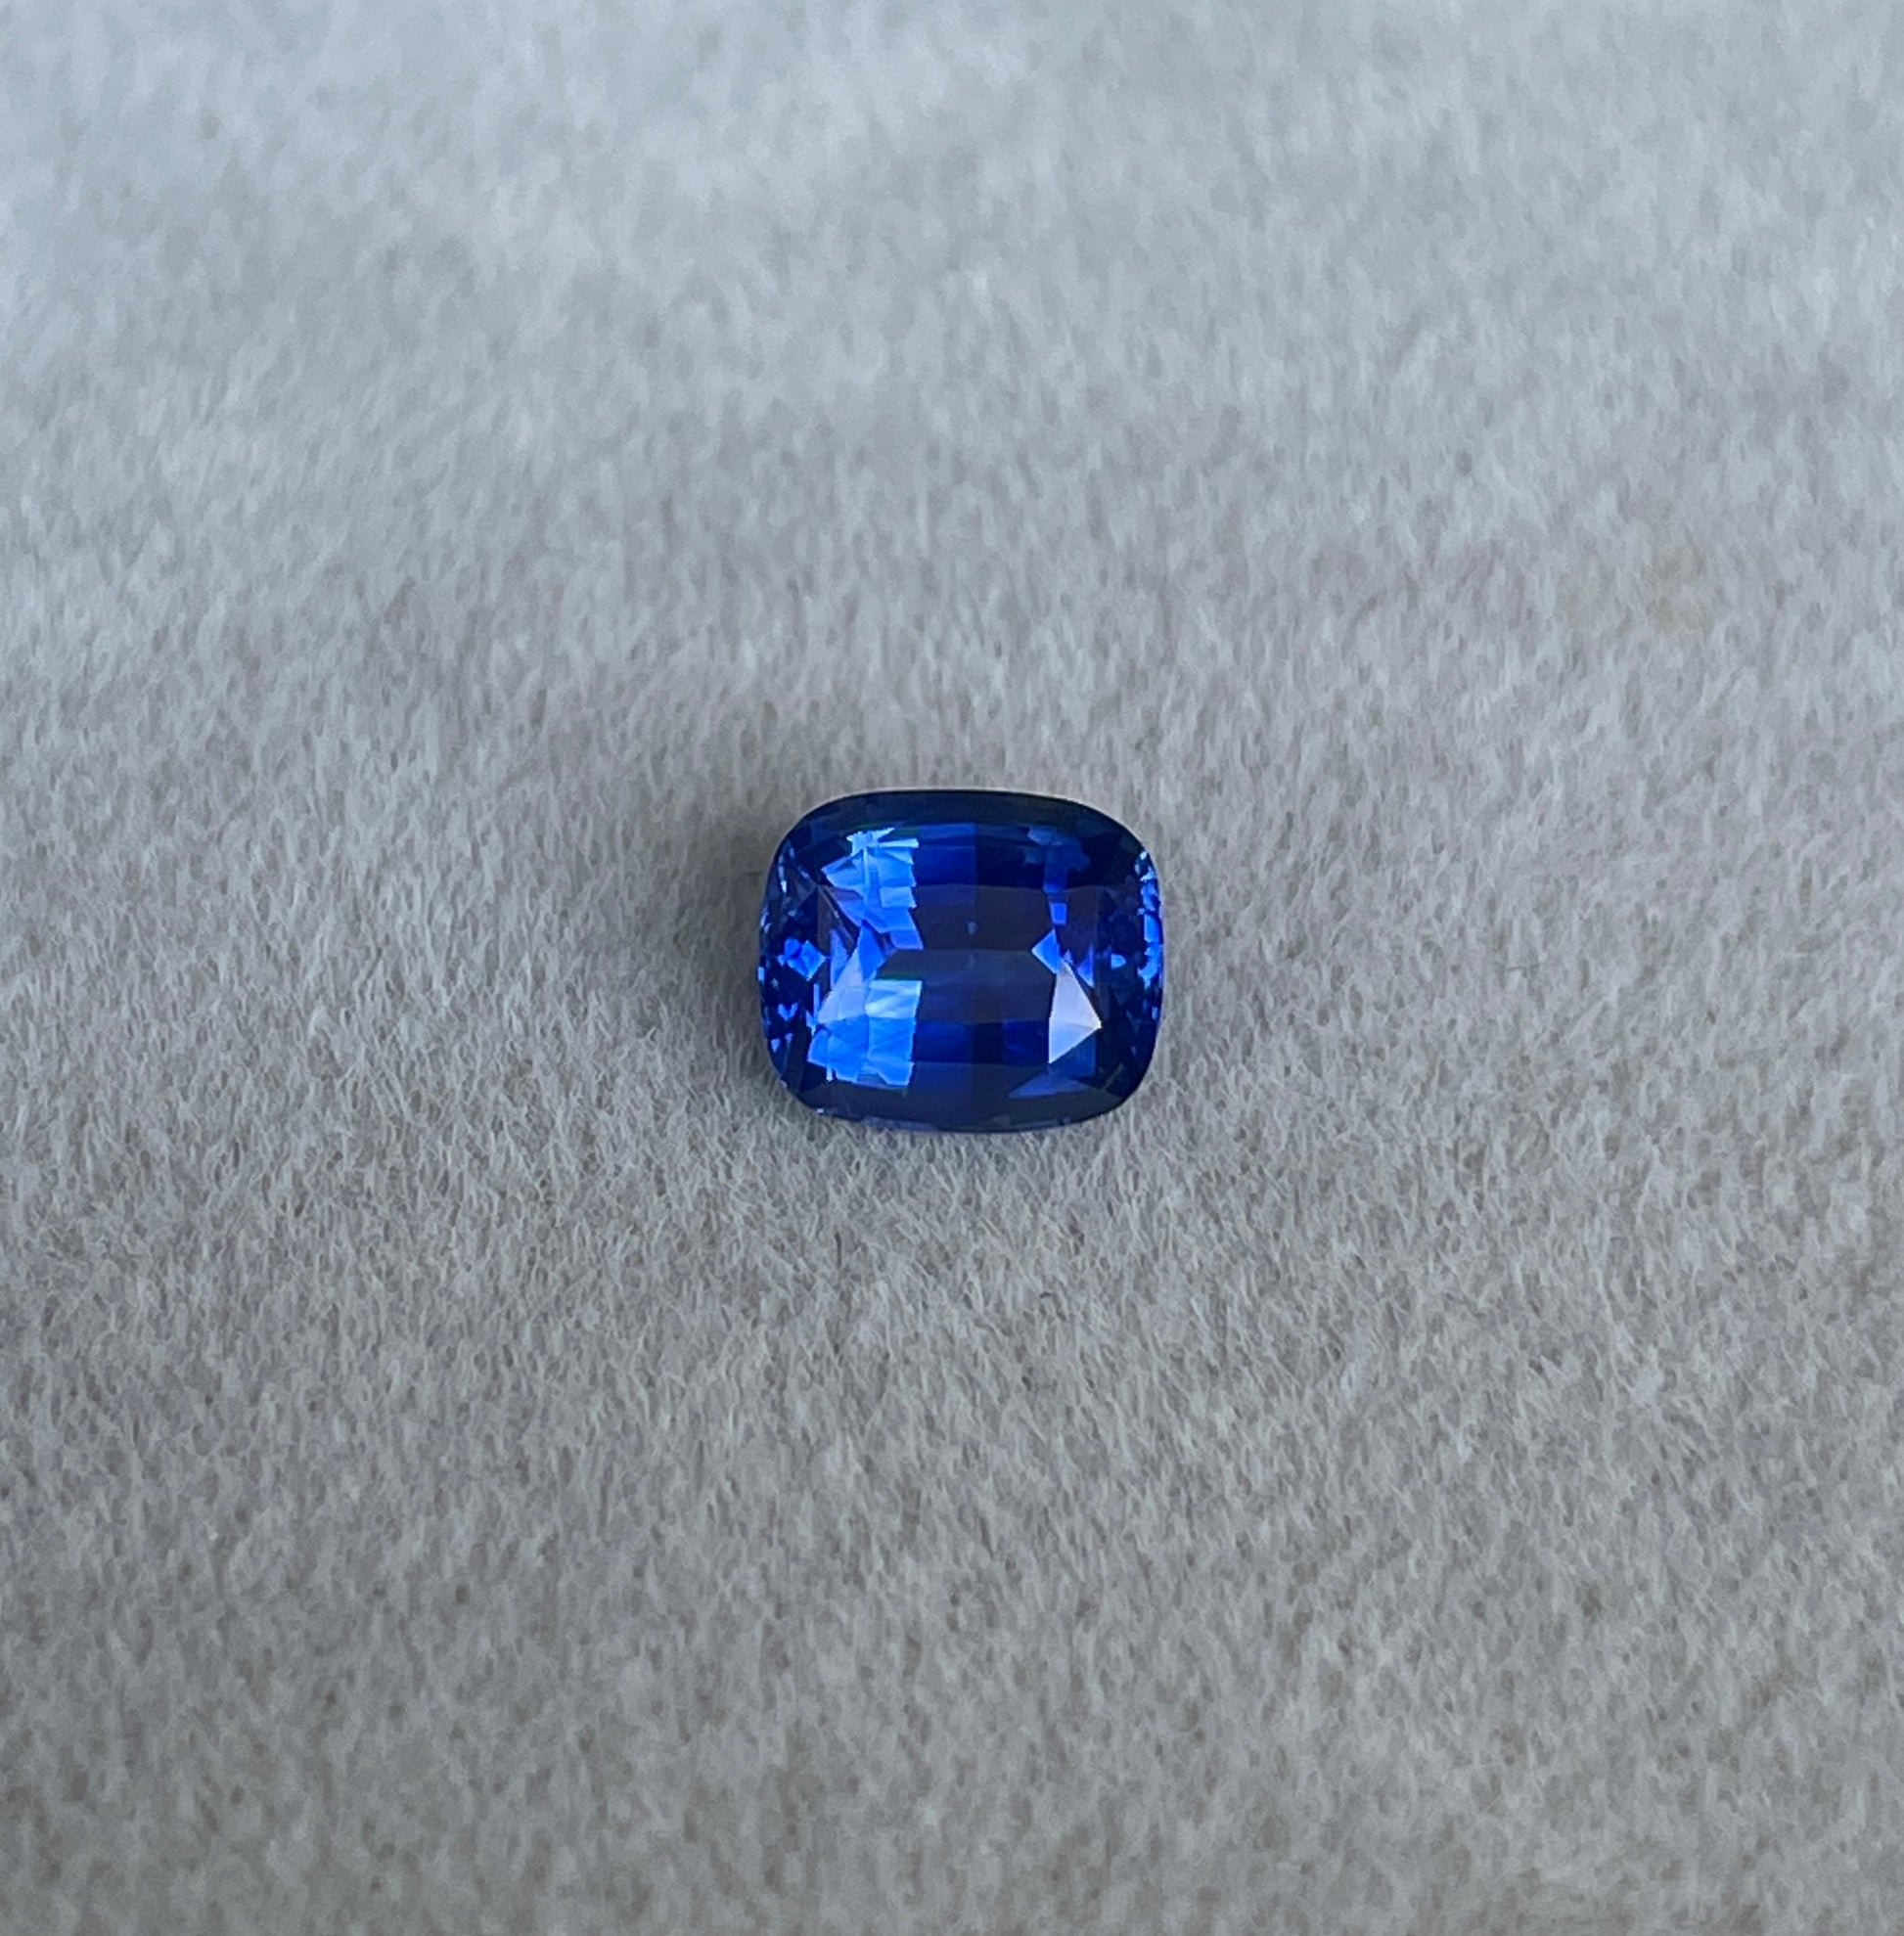 Sri Lanka Cushion Cut Blue Sapphire 1.05 Cts - NASHGEMS